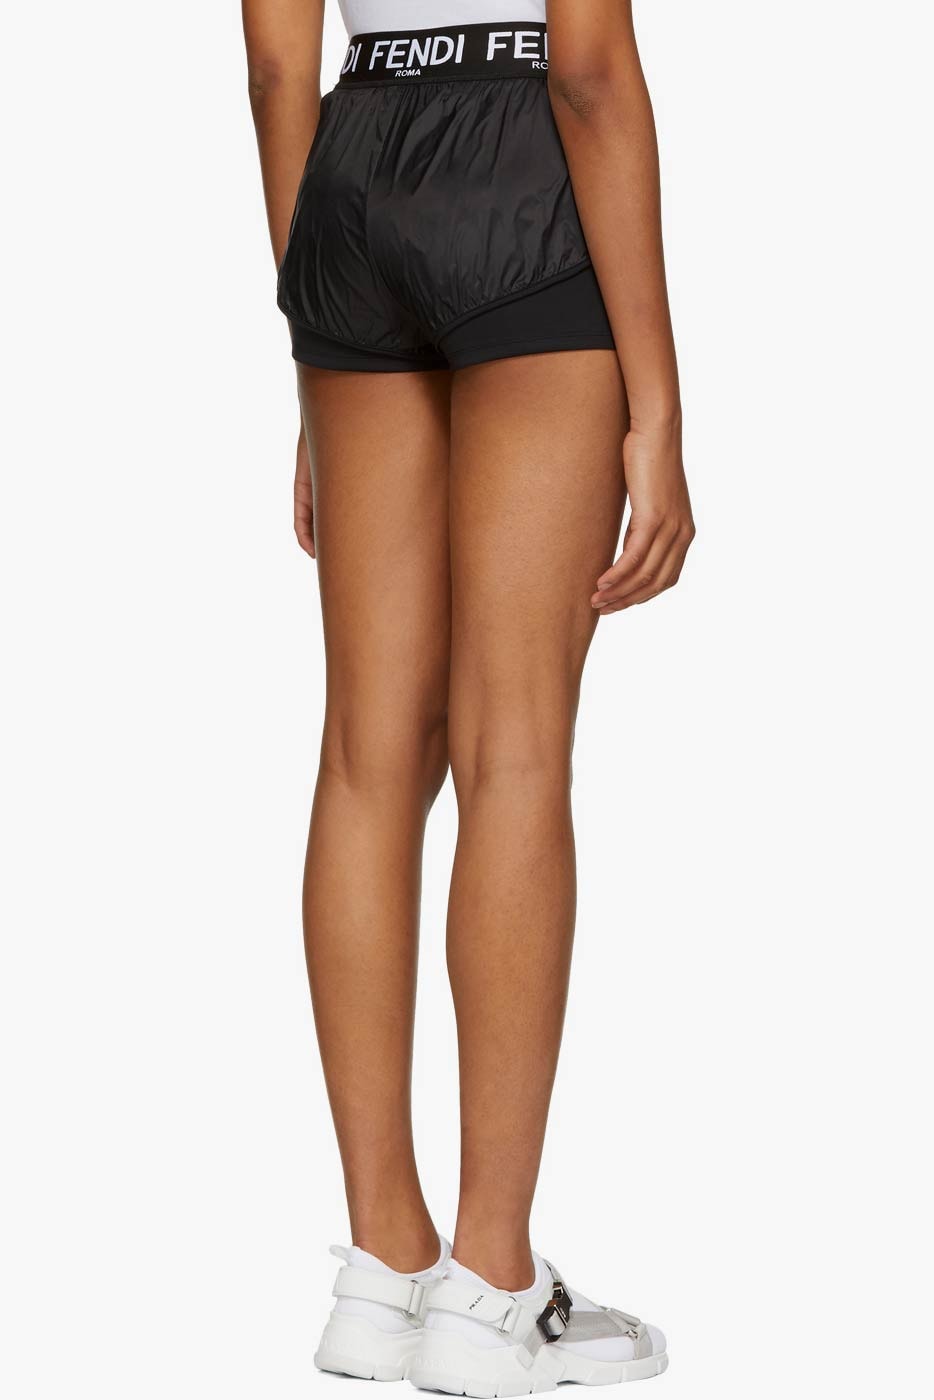 Fendi Nylon Sporty Shorts Black